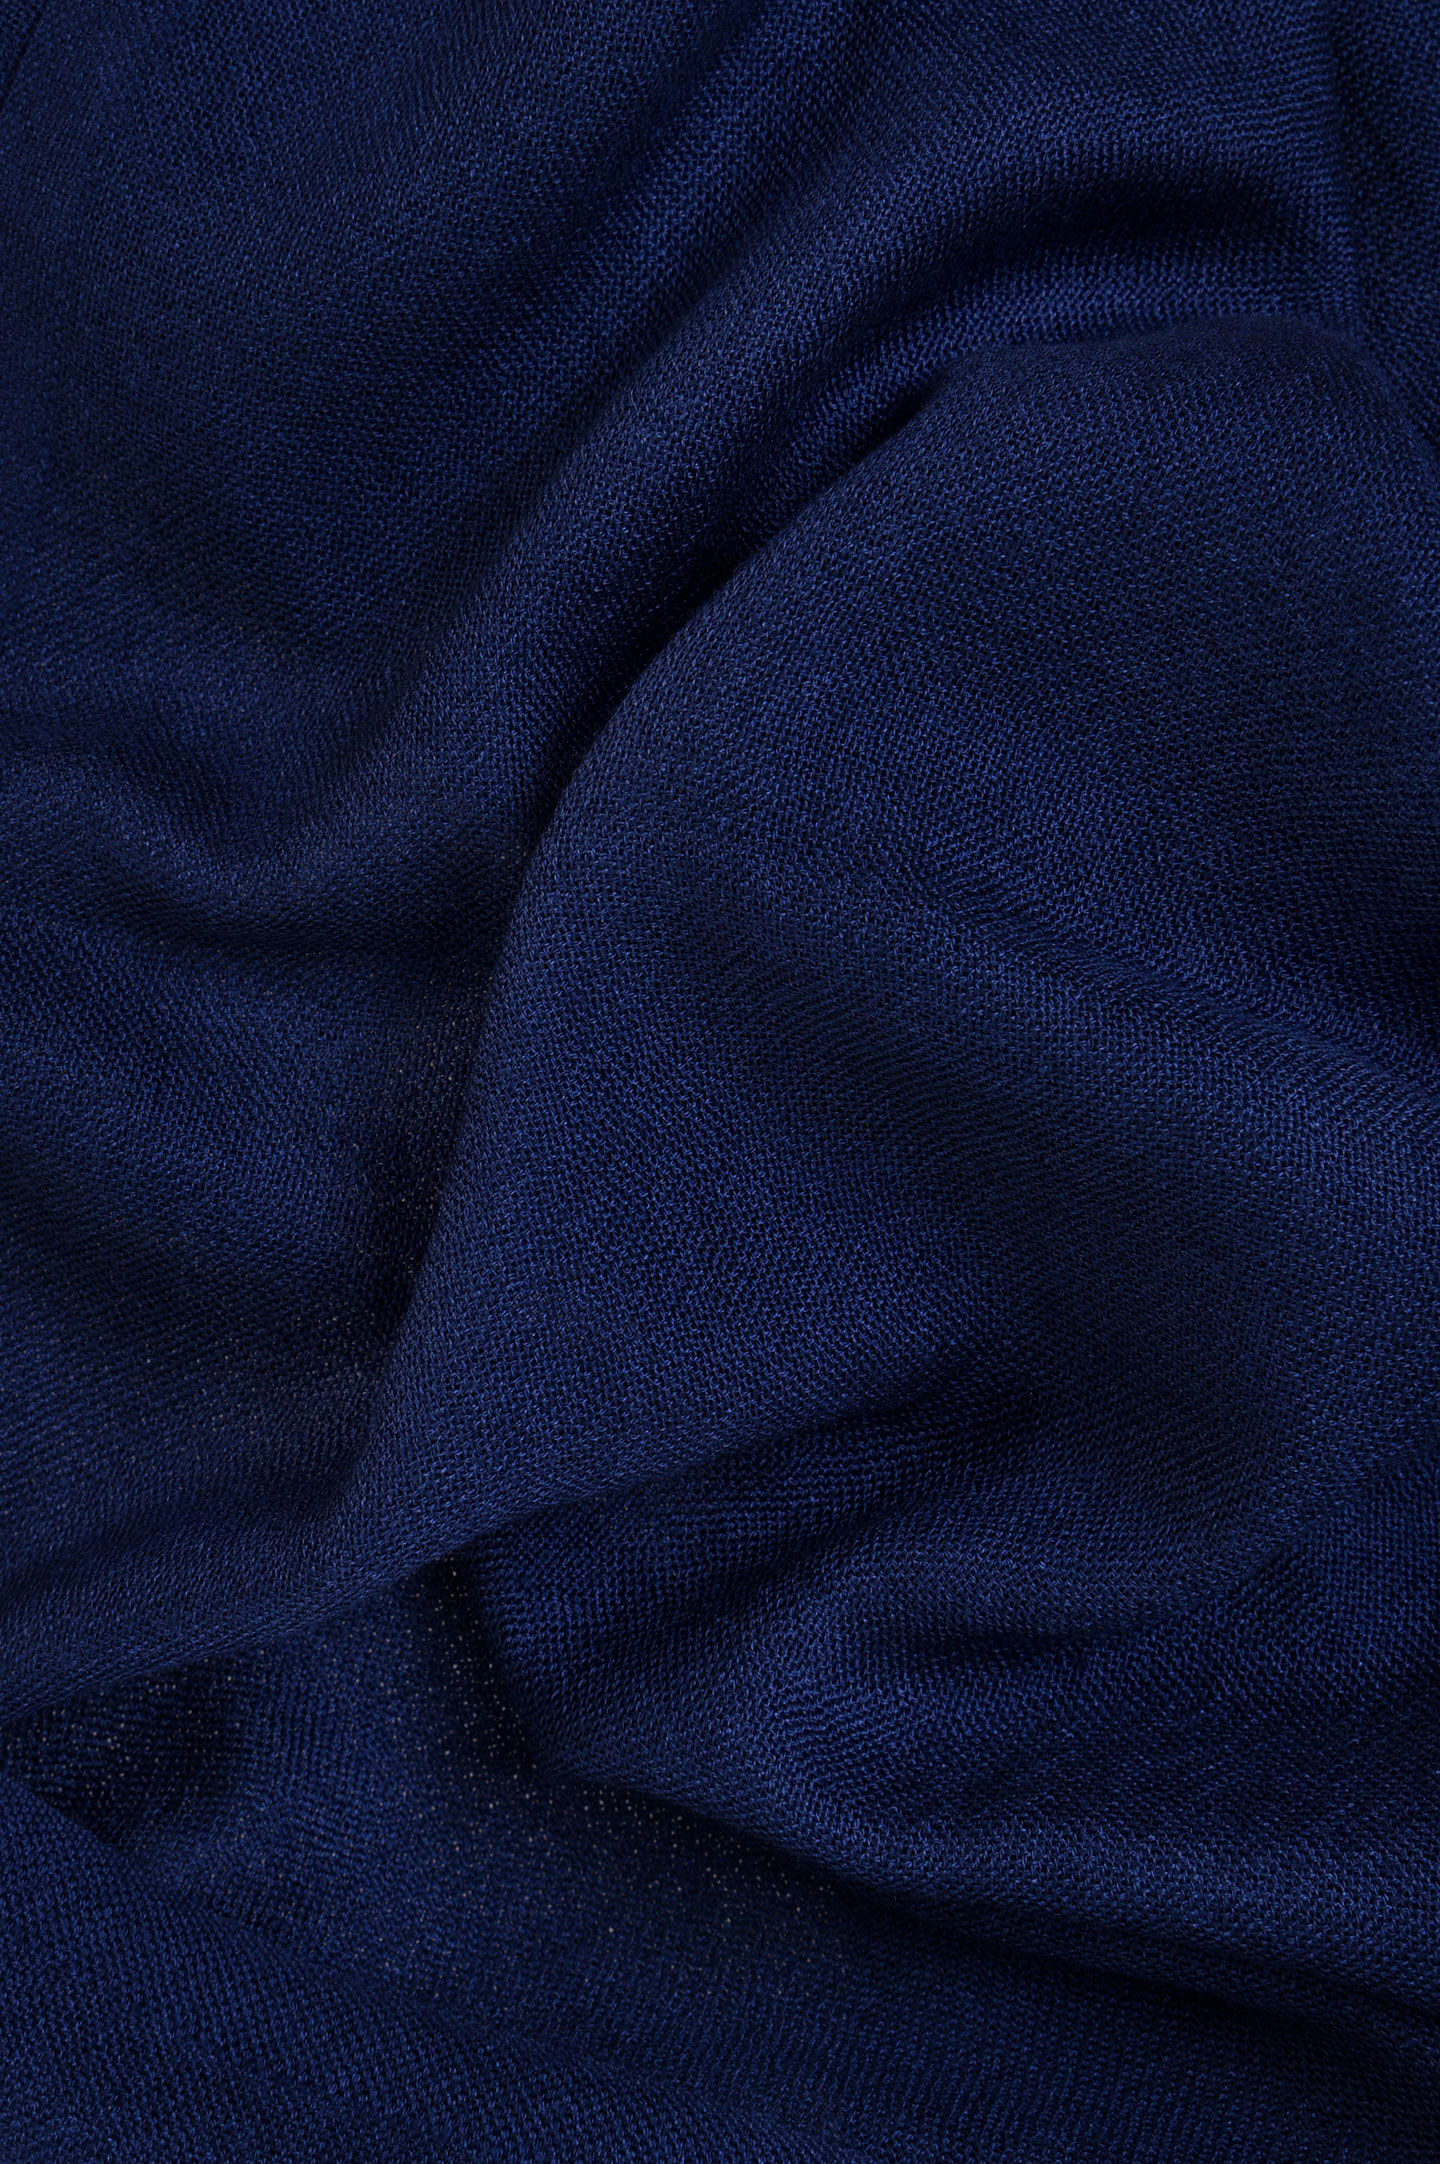 Шарф LORO PIANA F3-FAI6875, цвет: Синий, Мужской